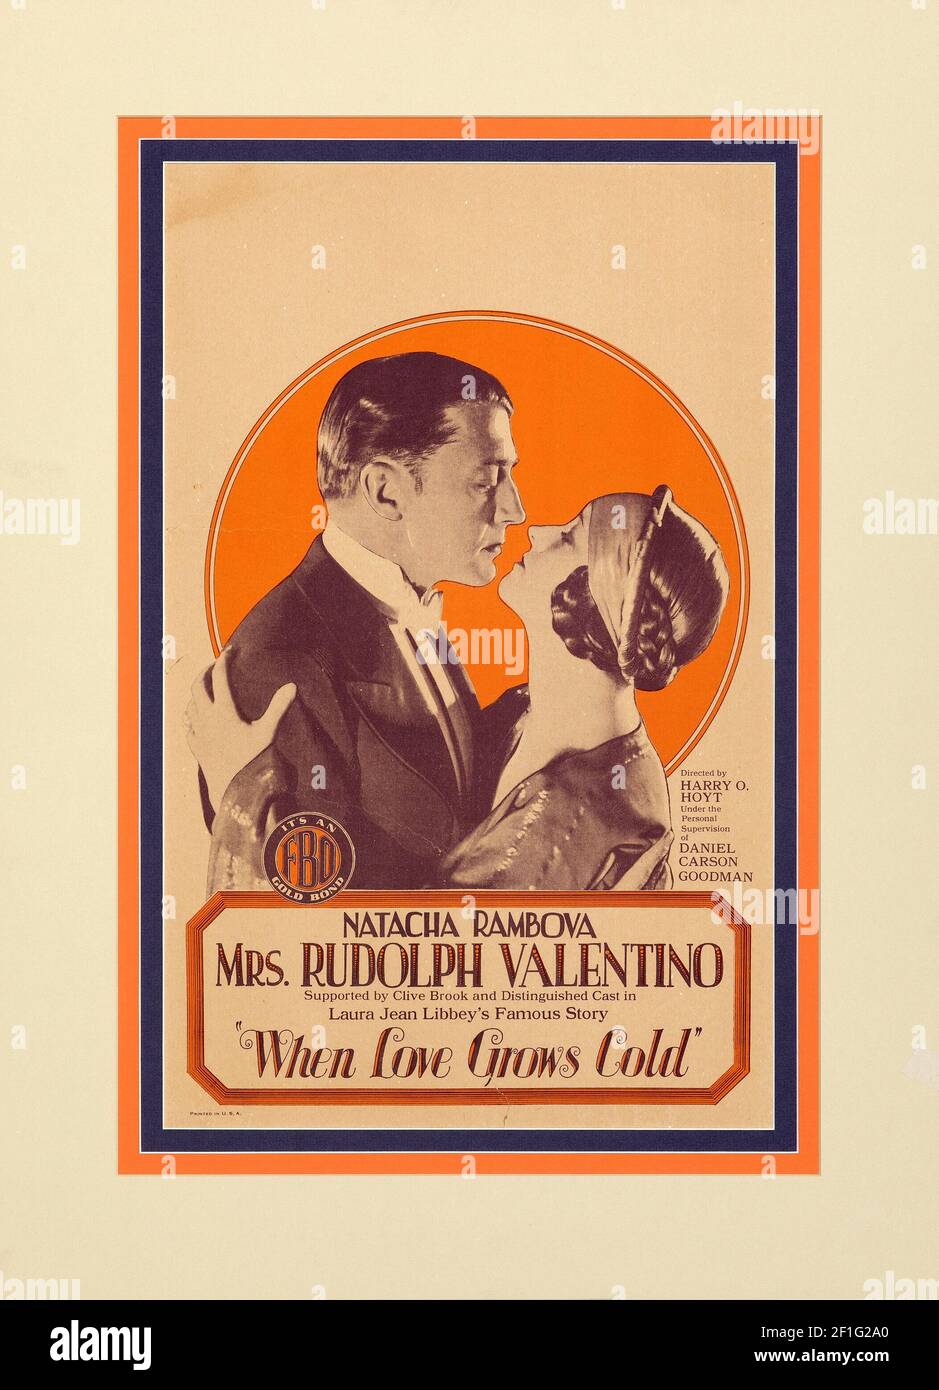 Quand l'amour devient froid, Natacha Rambova Mme Rudolph Valentino. Affiche de cinéma vintage, style classique. 1926. Banque D'Images